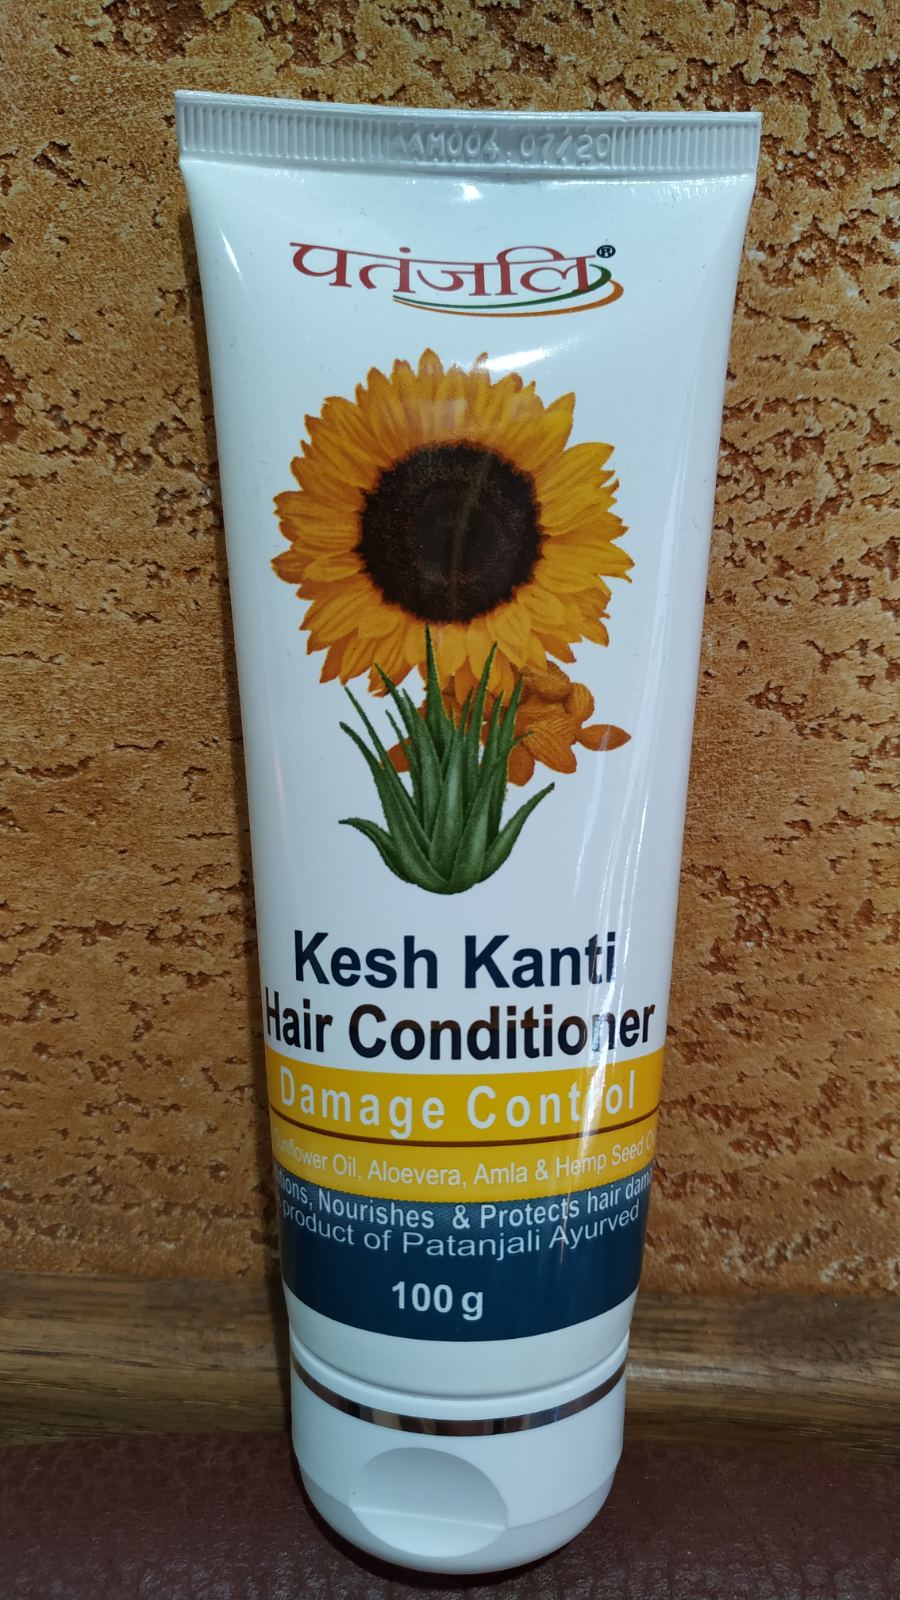 Кондиционер Патанджали для поврежденных волос Алоэ Миндаль 100 гр Patanjali hair conditioner Damage Control Kesh kanti Индия